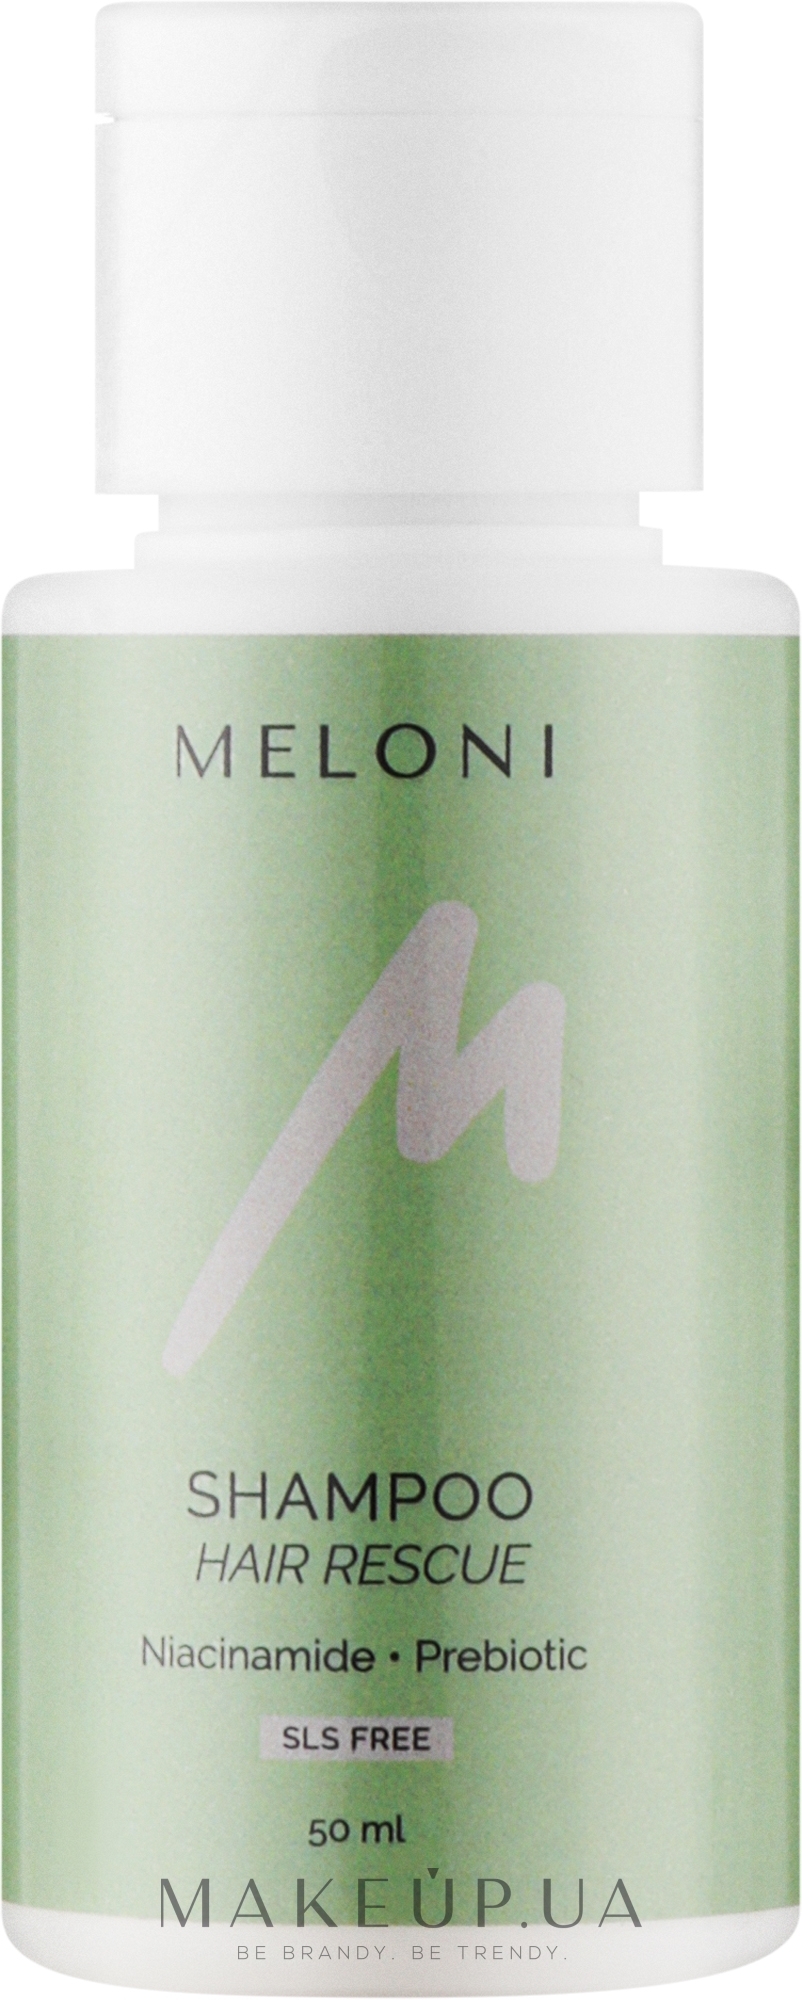 Зміцнювальний безсульфатний шампунь проти випадіння з ніацинамідом та пребіотиком - Meloni Hair Rescue Shampoo — фото 50ml